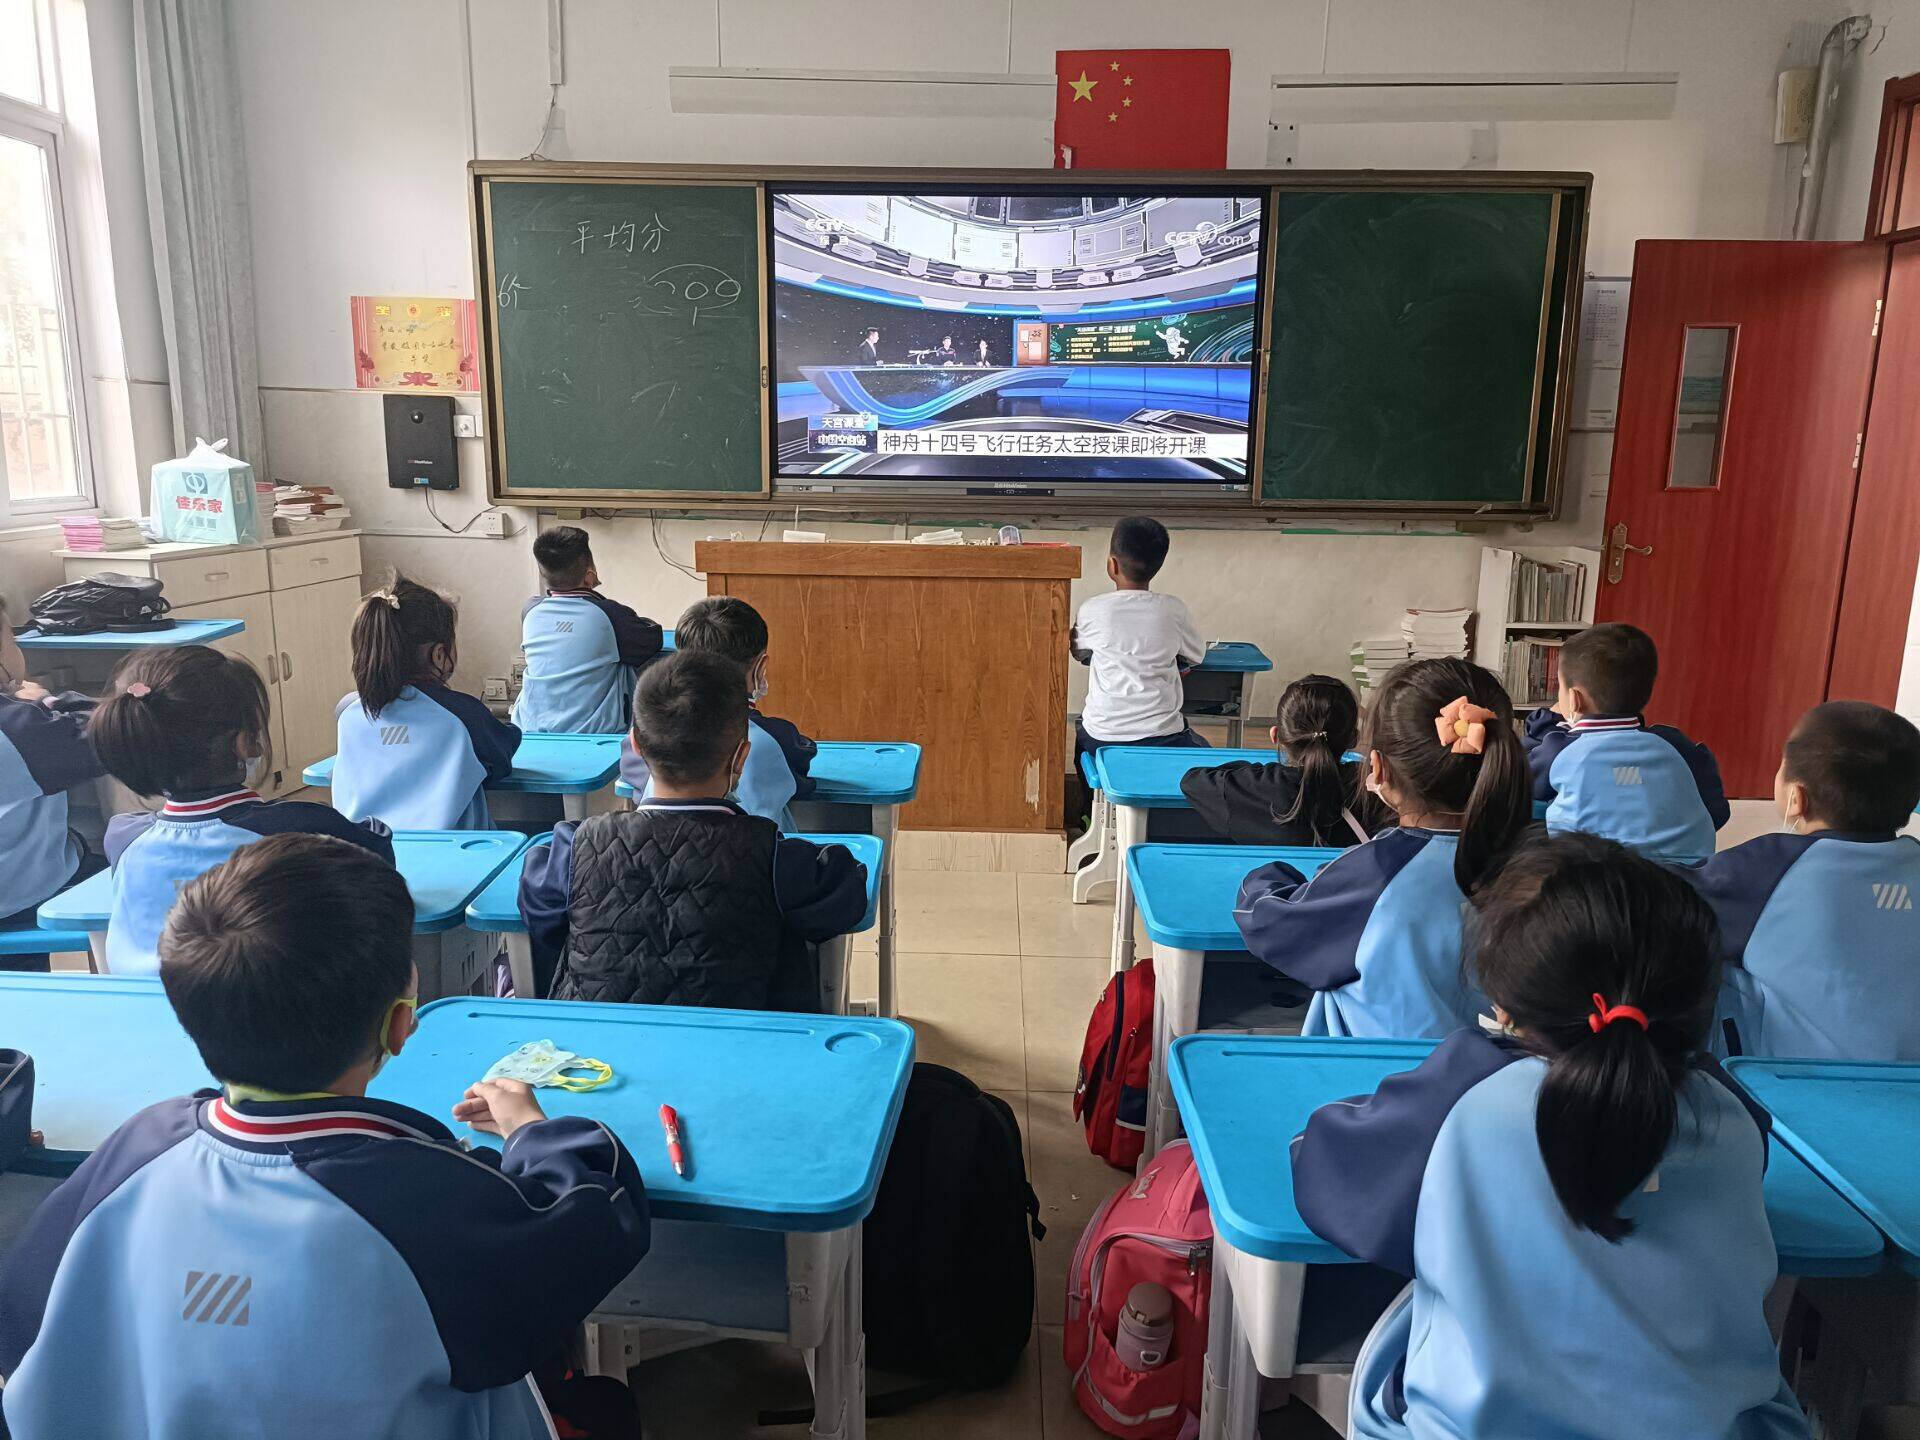 莱阳市第二实验小学小学组织收看“天宫课堂”